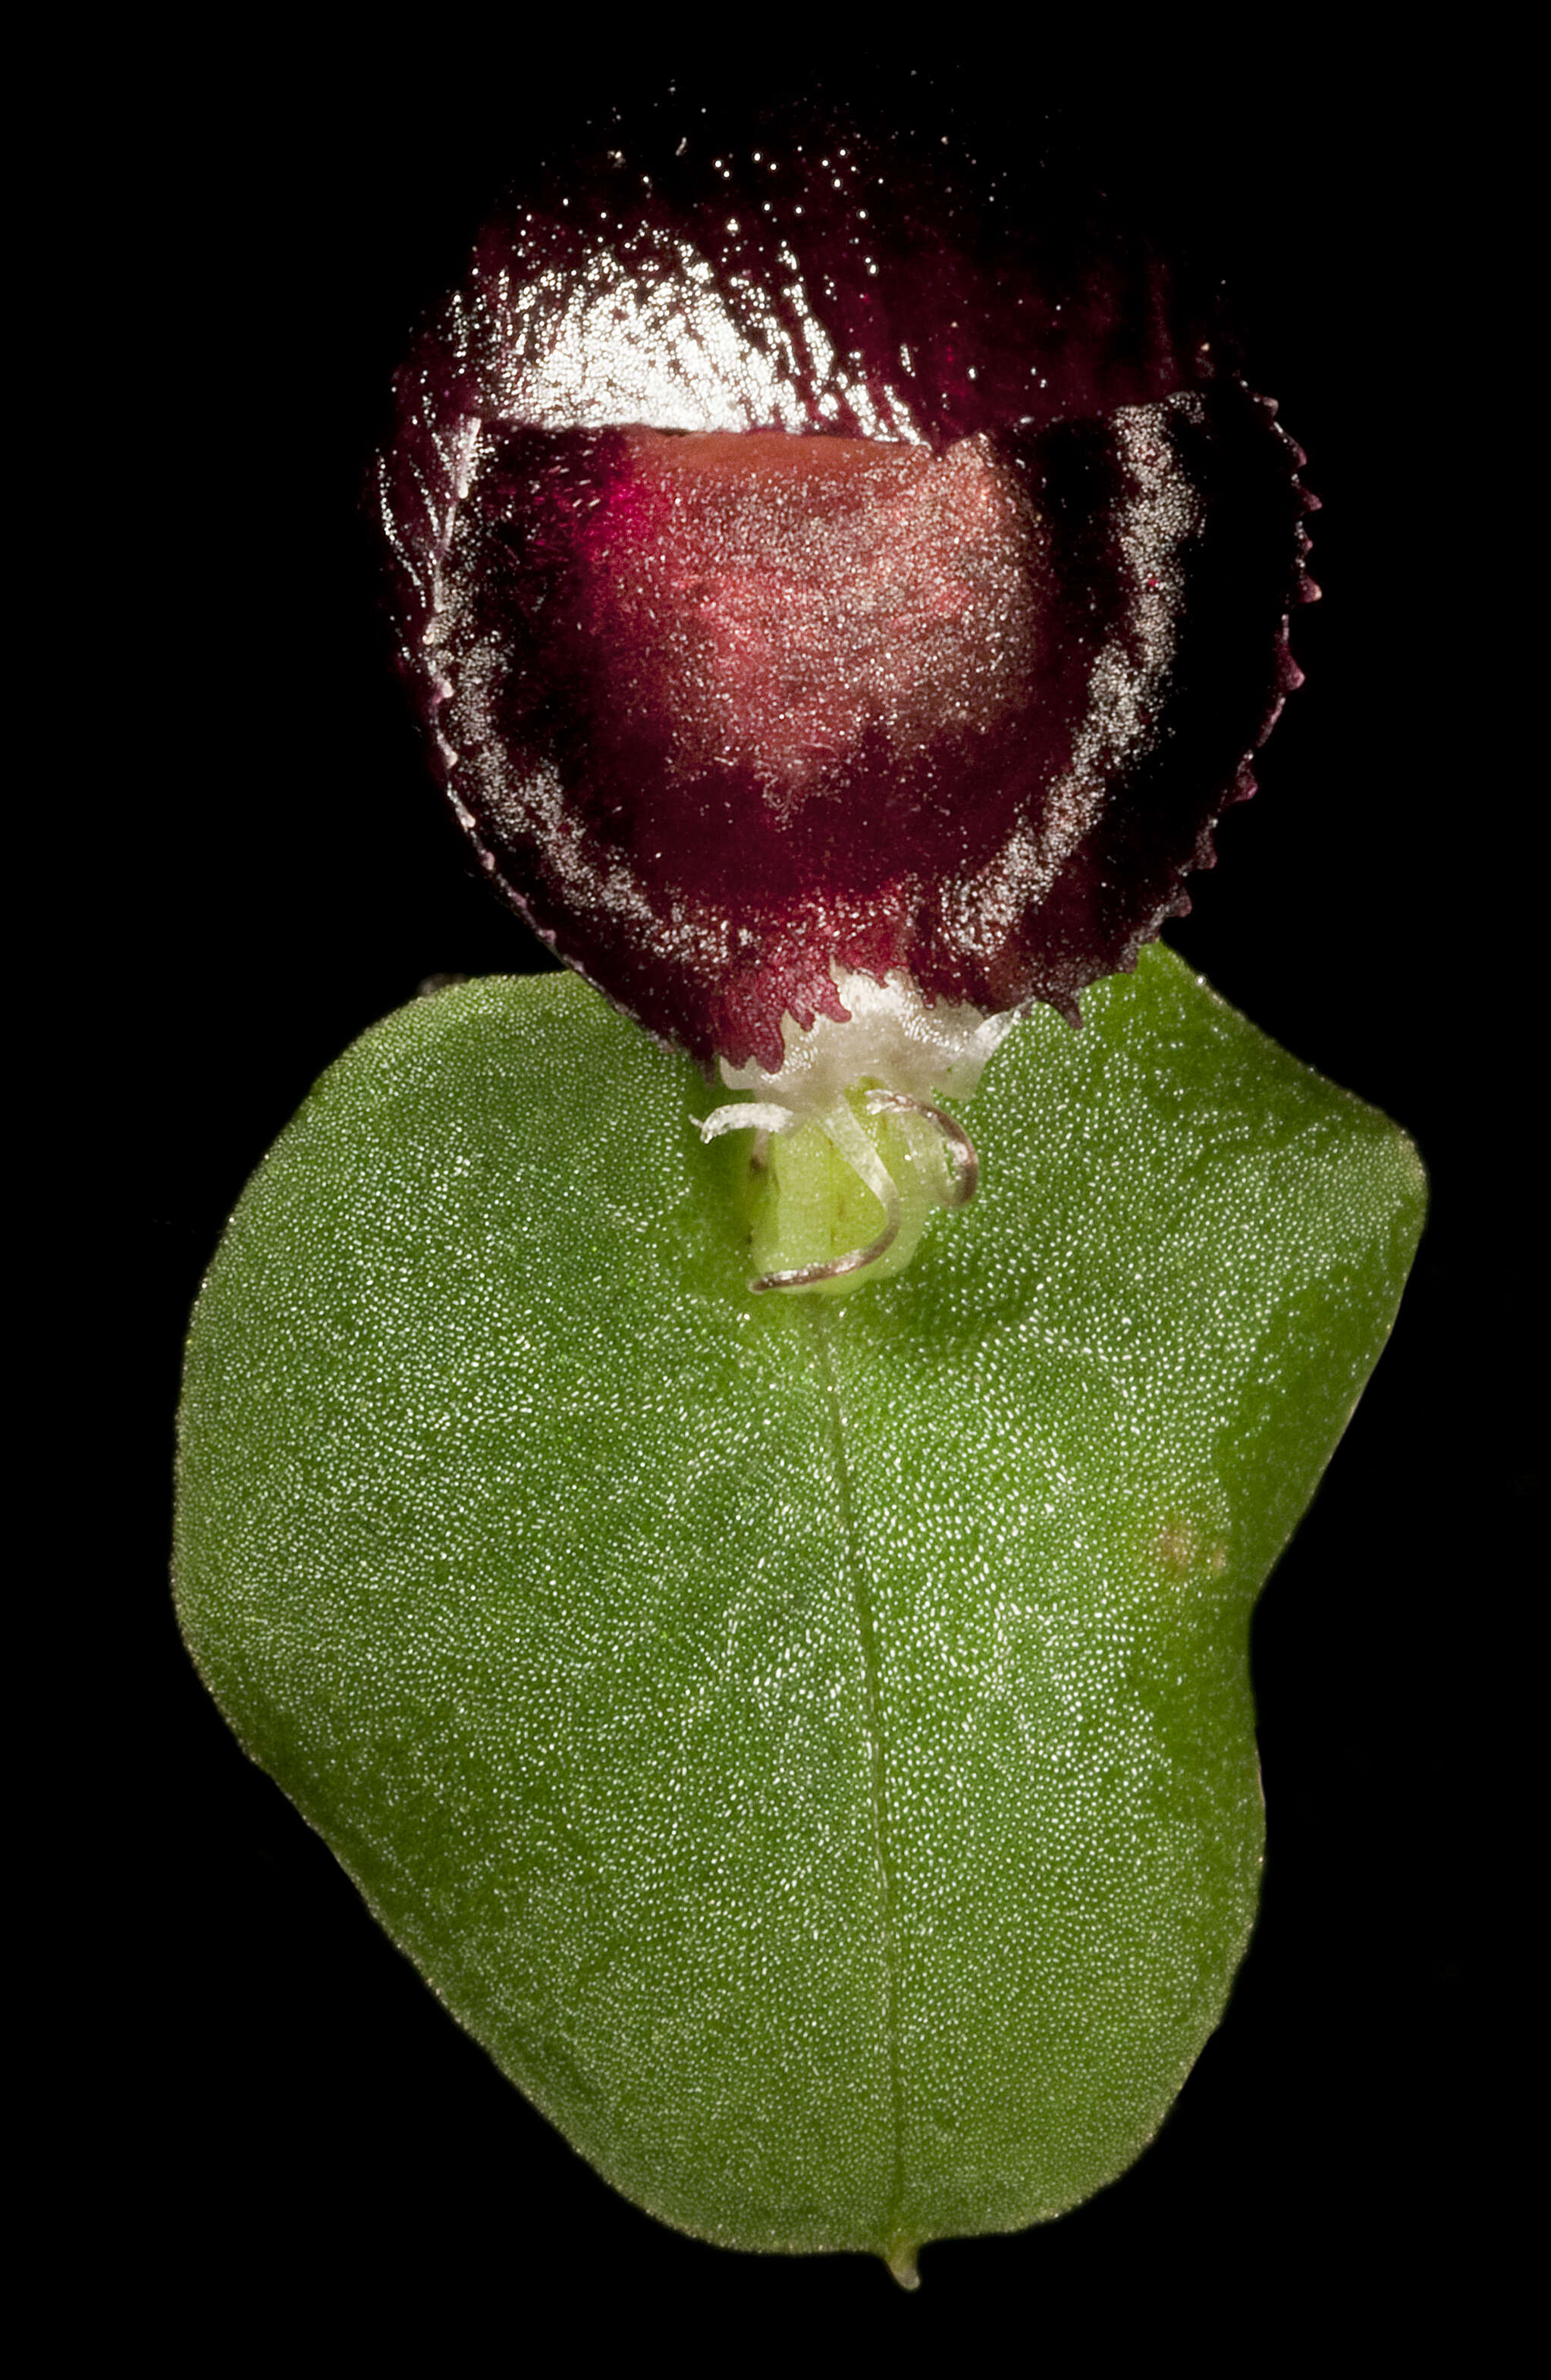 Image of Western helmet orchid